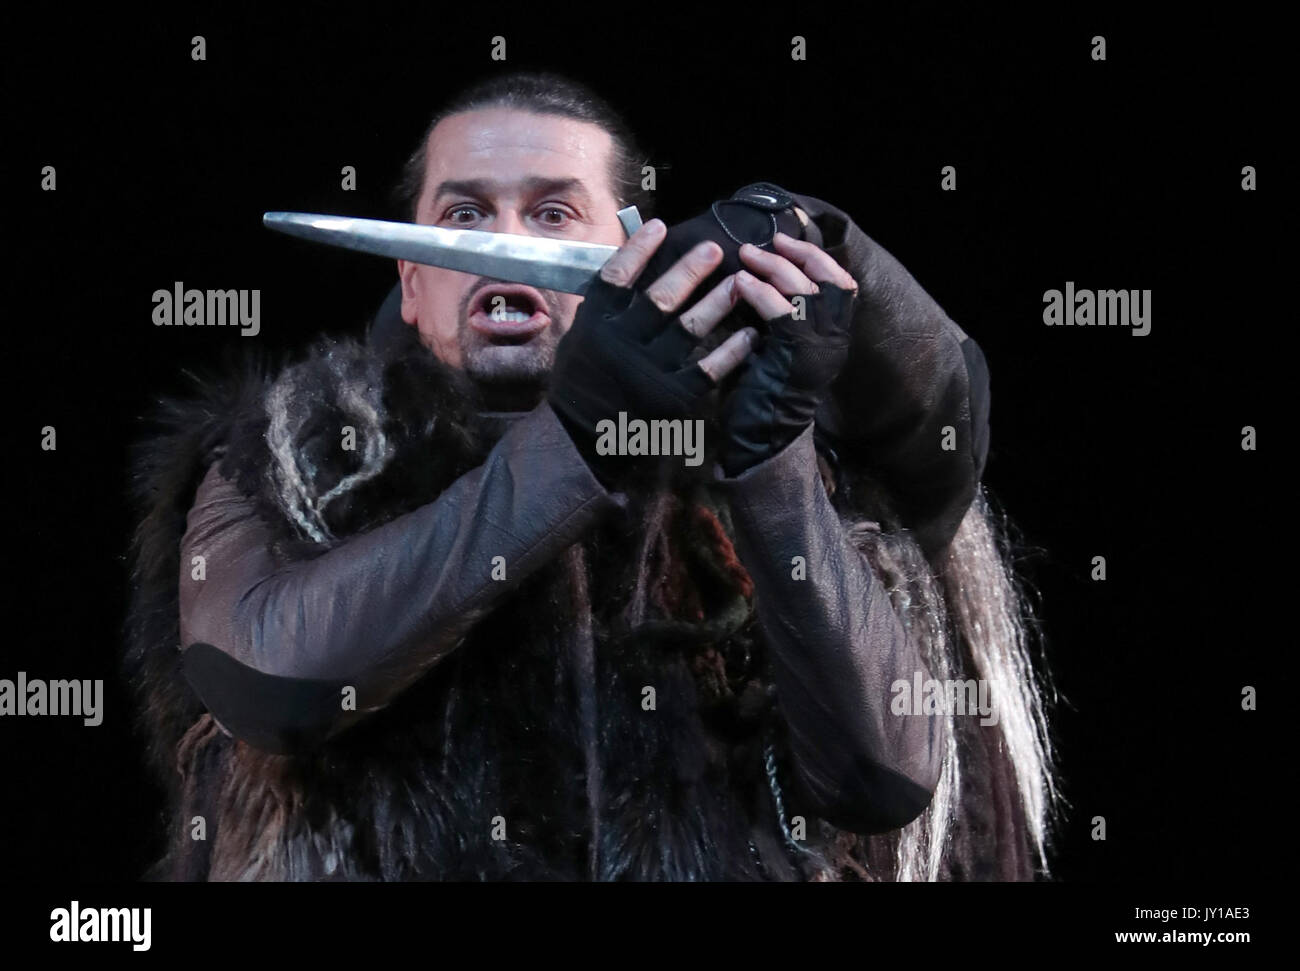 Dalibor Jenis wie Macbeth auf der Bühne des Festspielhauses in Verdis Opern dunkel Thriller Macbeth während des Edinburgh International Festival 2017. Stockfoto